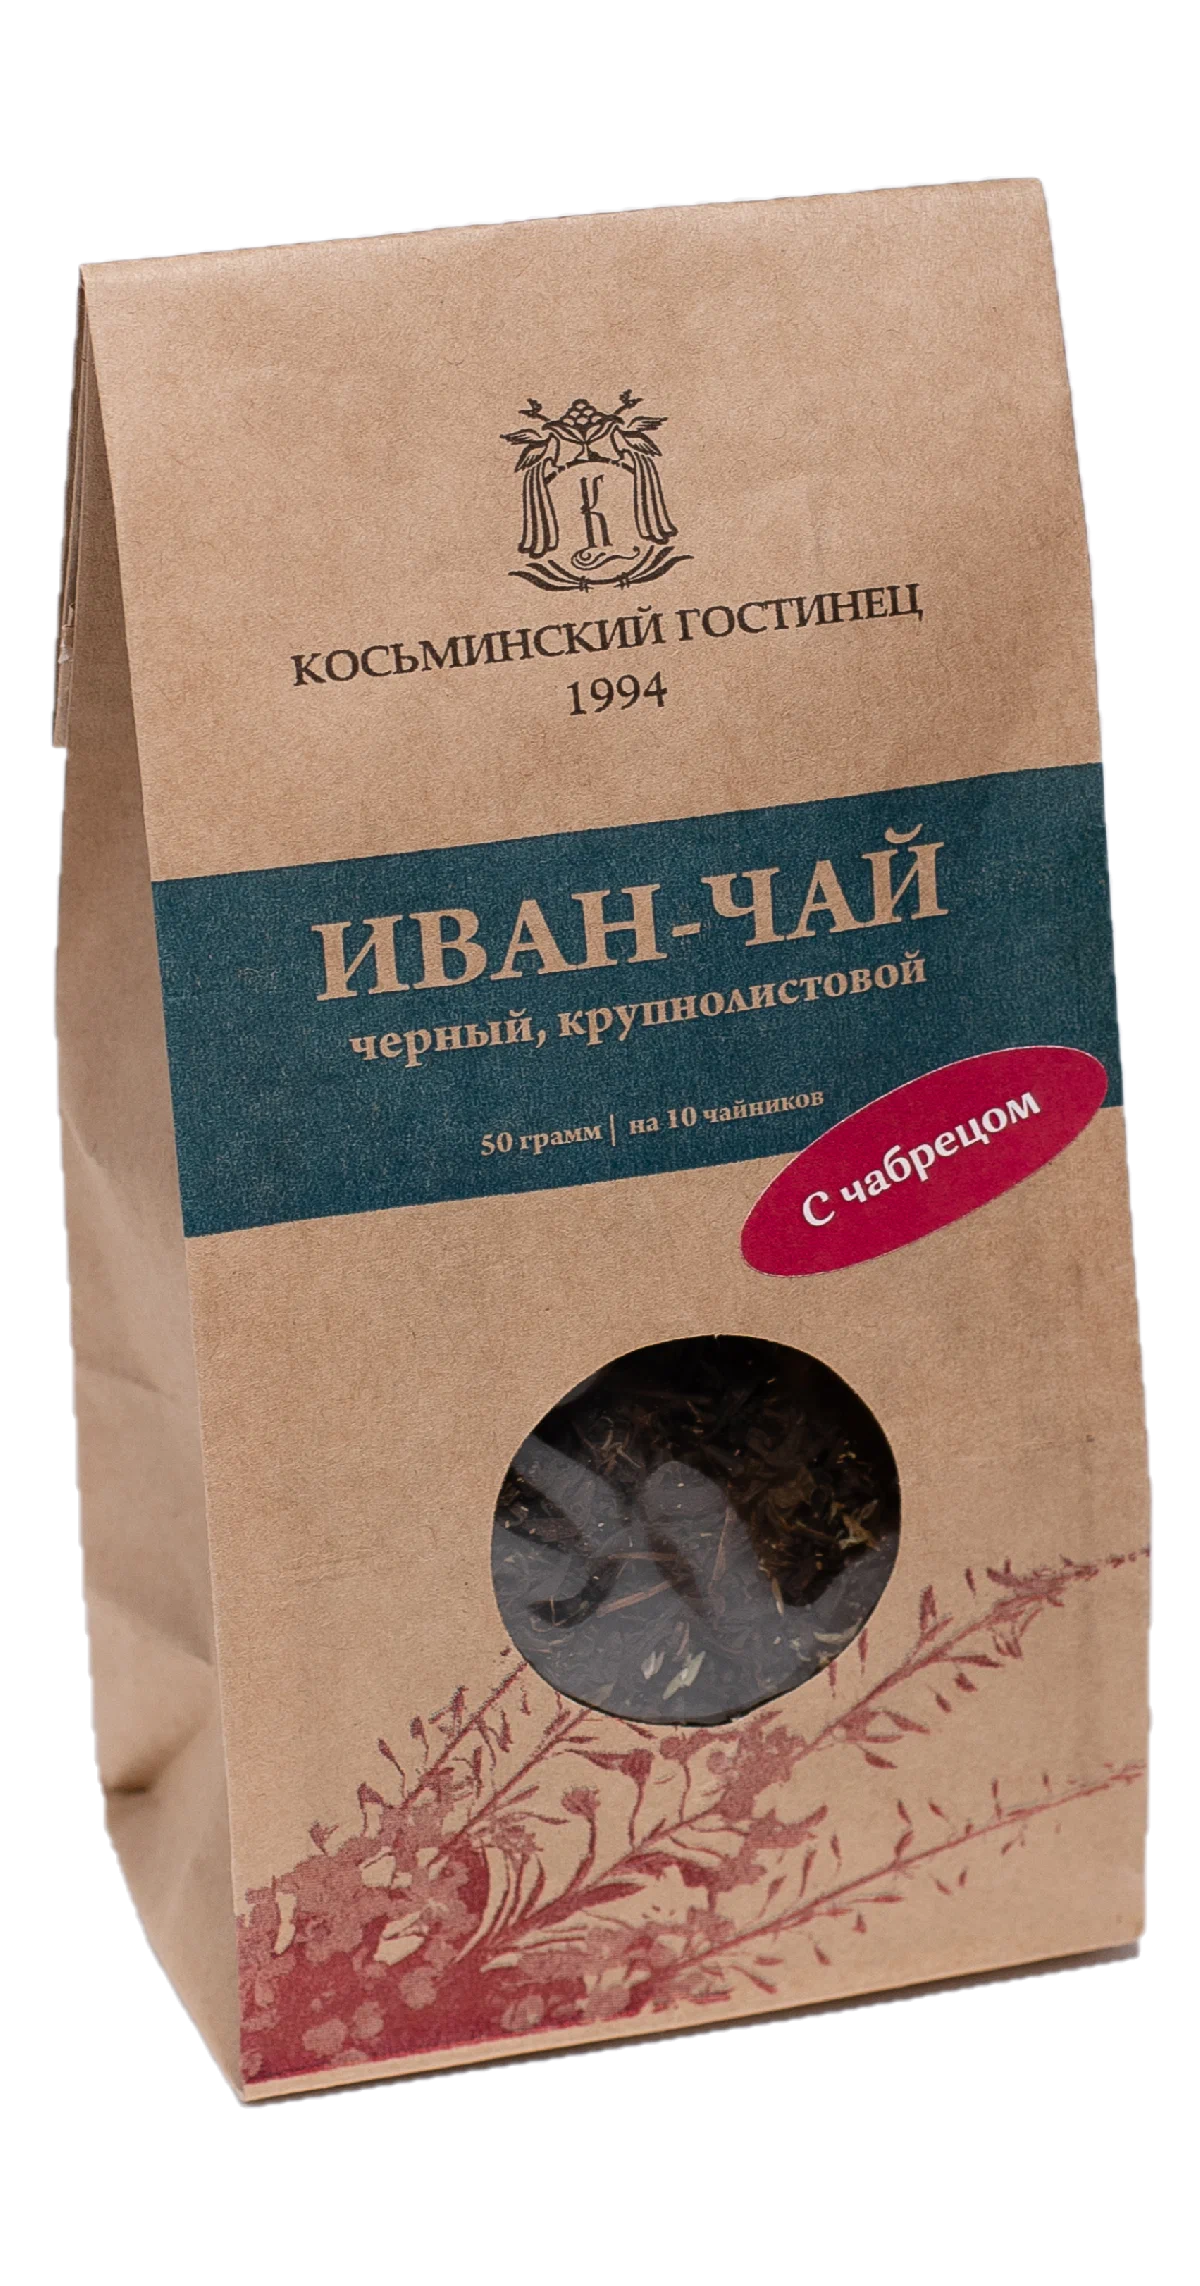 Иван-чай чёрный крупнолистовой С ЧАБРЕЦОМ крафт-пакет 50гр (Косьминский гостинец) - магазин здорового питания «Добрый лес»